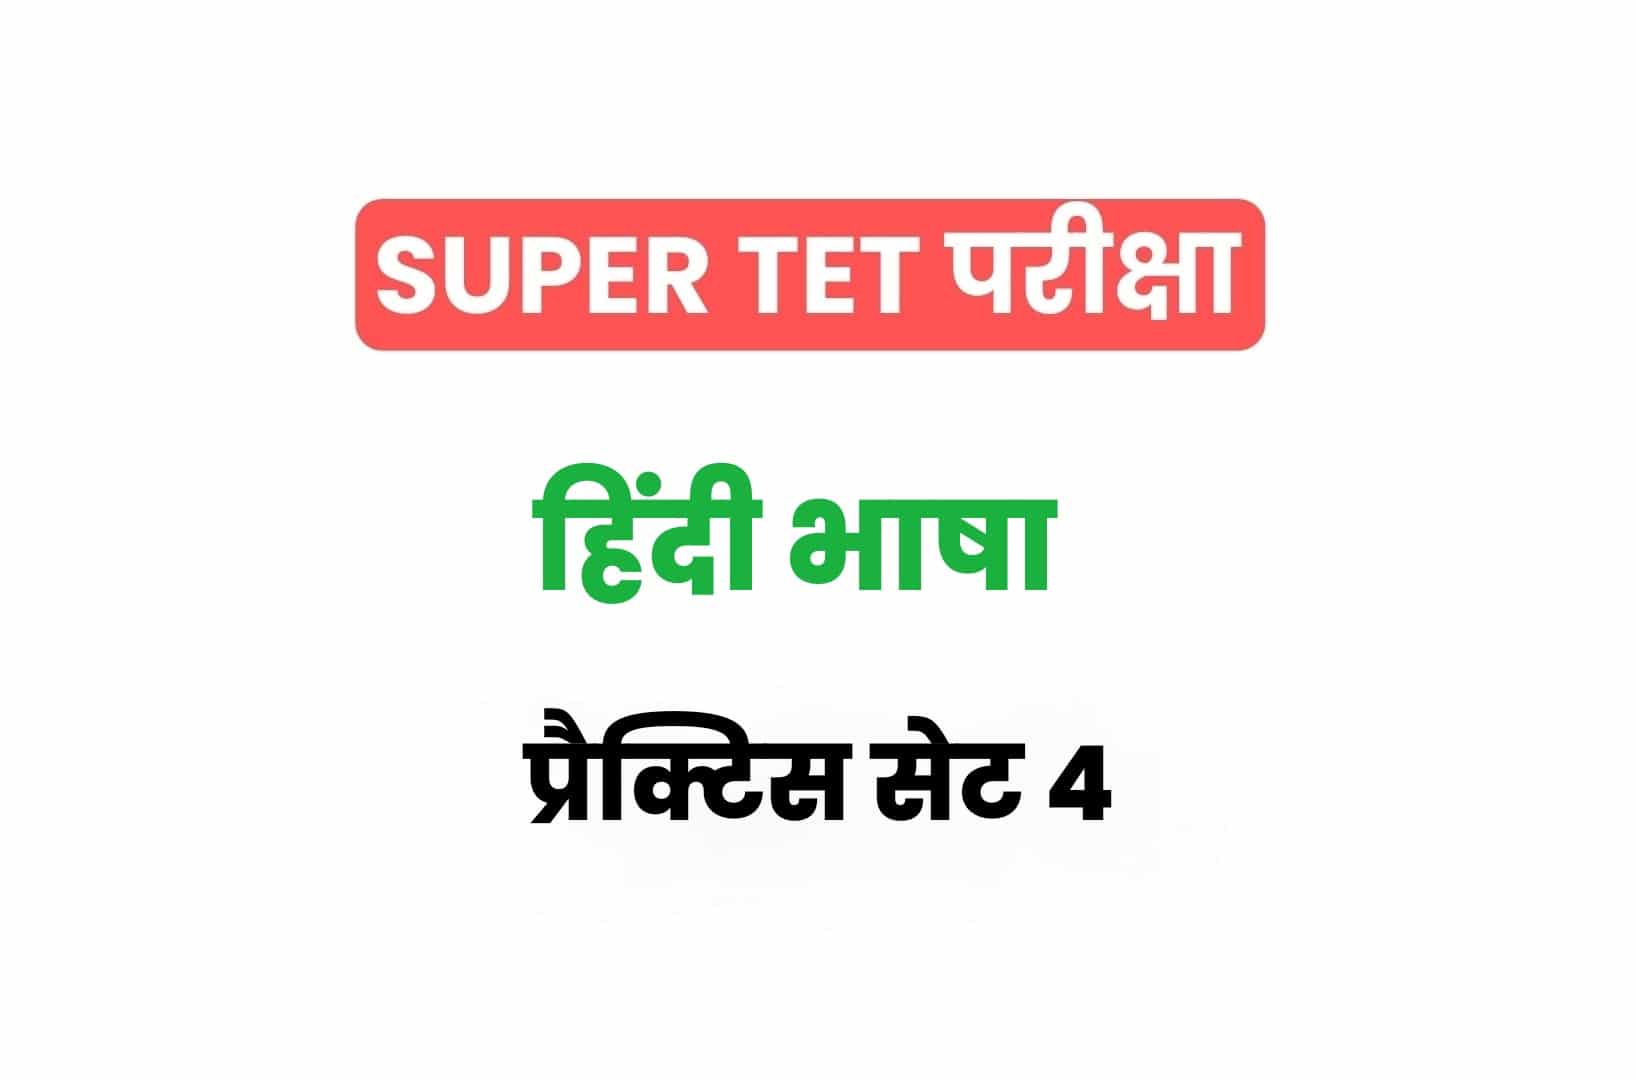 SUPER TET 2022 हिंदी प्रैक्टिस सेट 4: हिंदी के 15 ऐसे महत्वपूर्ण प्रश्नों का संग्रह जो आगामी सुपर टेट परीक्षा में पूछे जा सकते हैं, अवश्य देखें